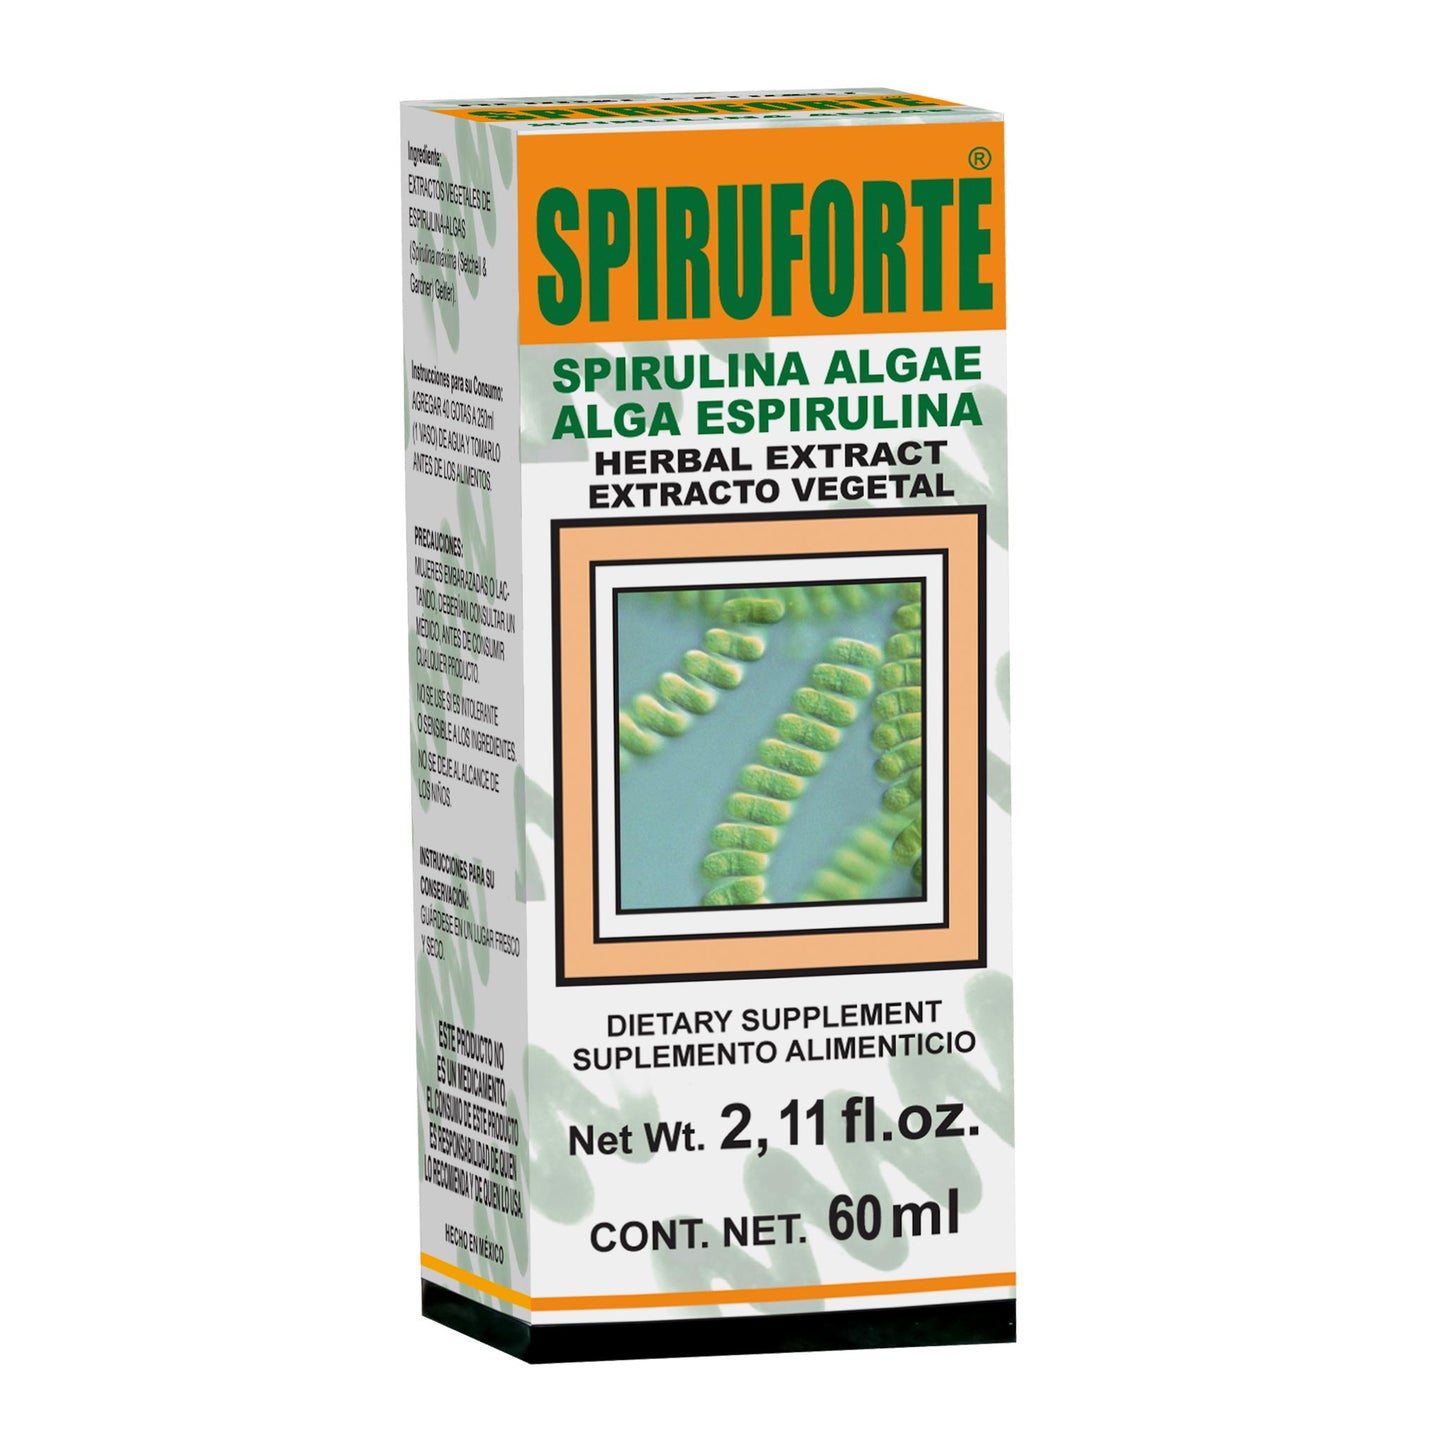 SPIRUFORTE ® extracto vegetal 60ml